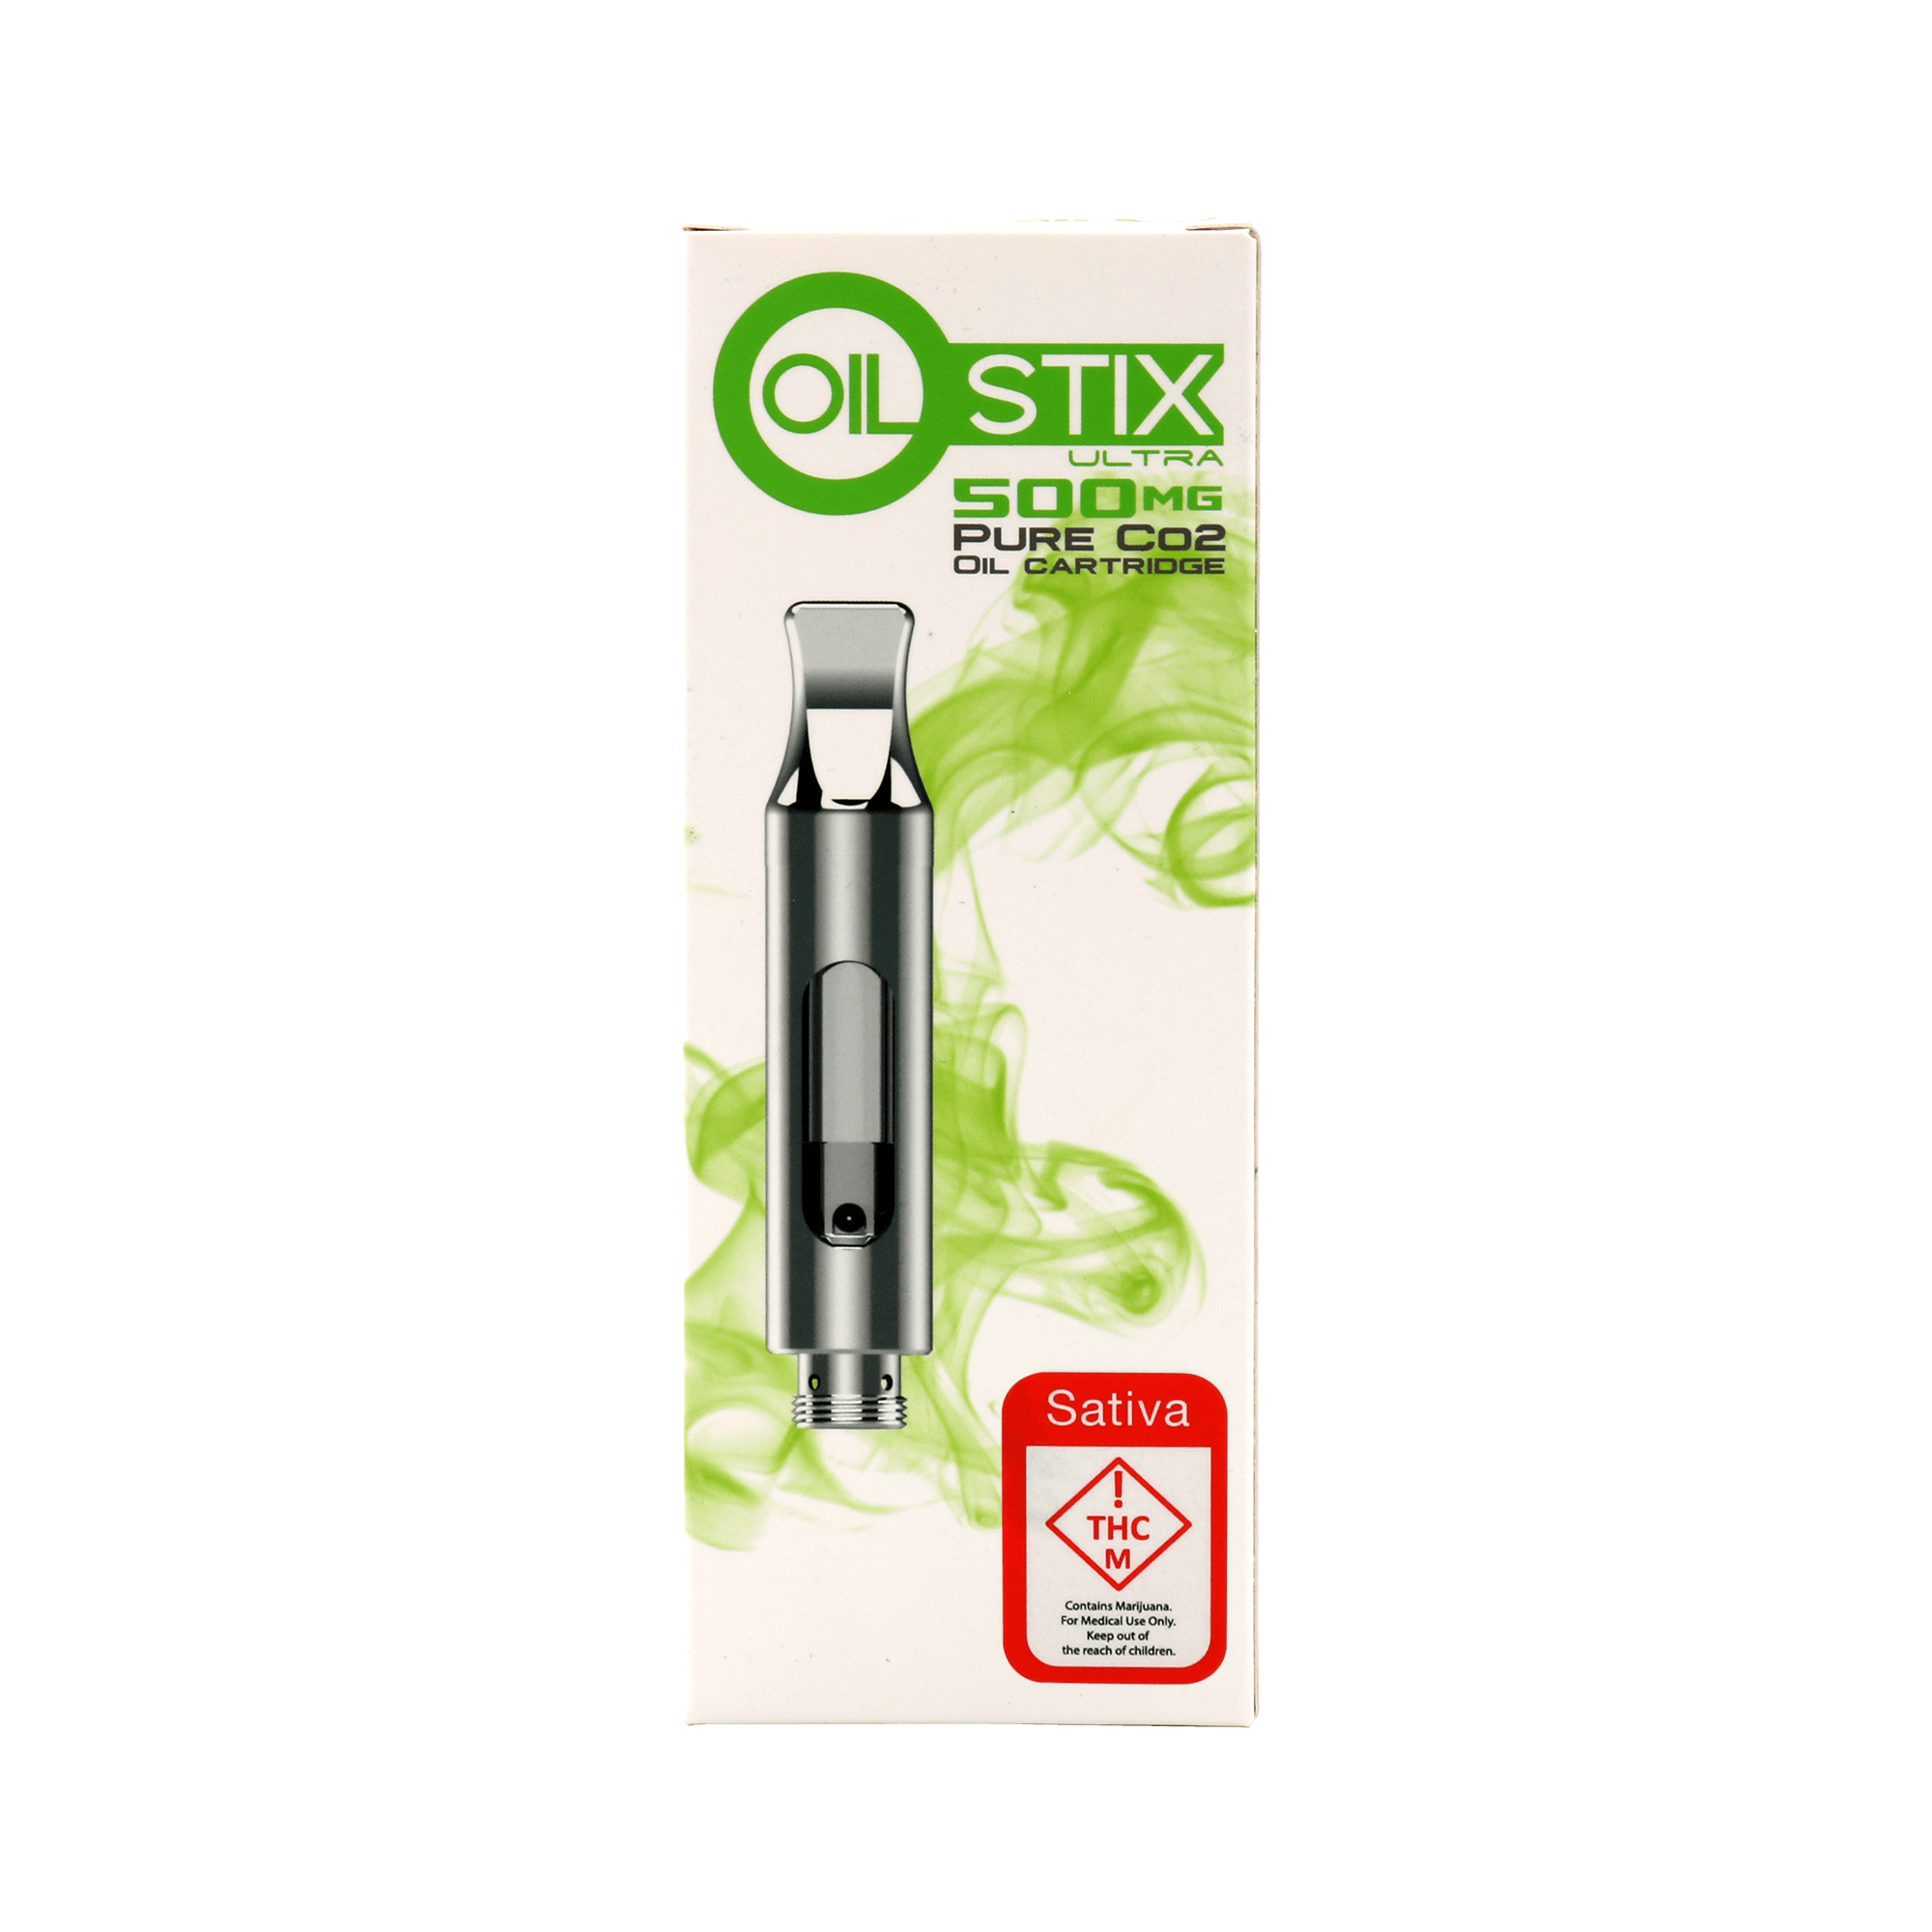 concentrate-oil-stix-ultra-sativa-cartridge